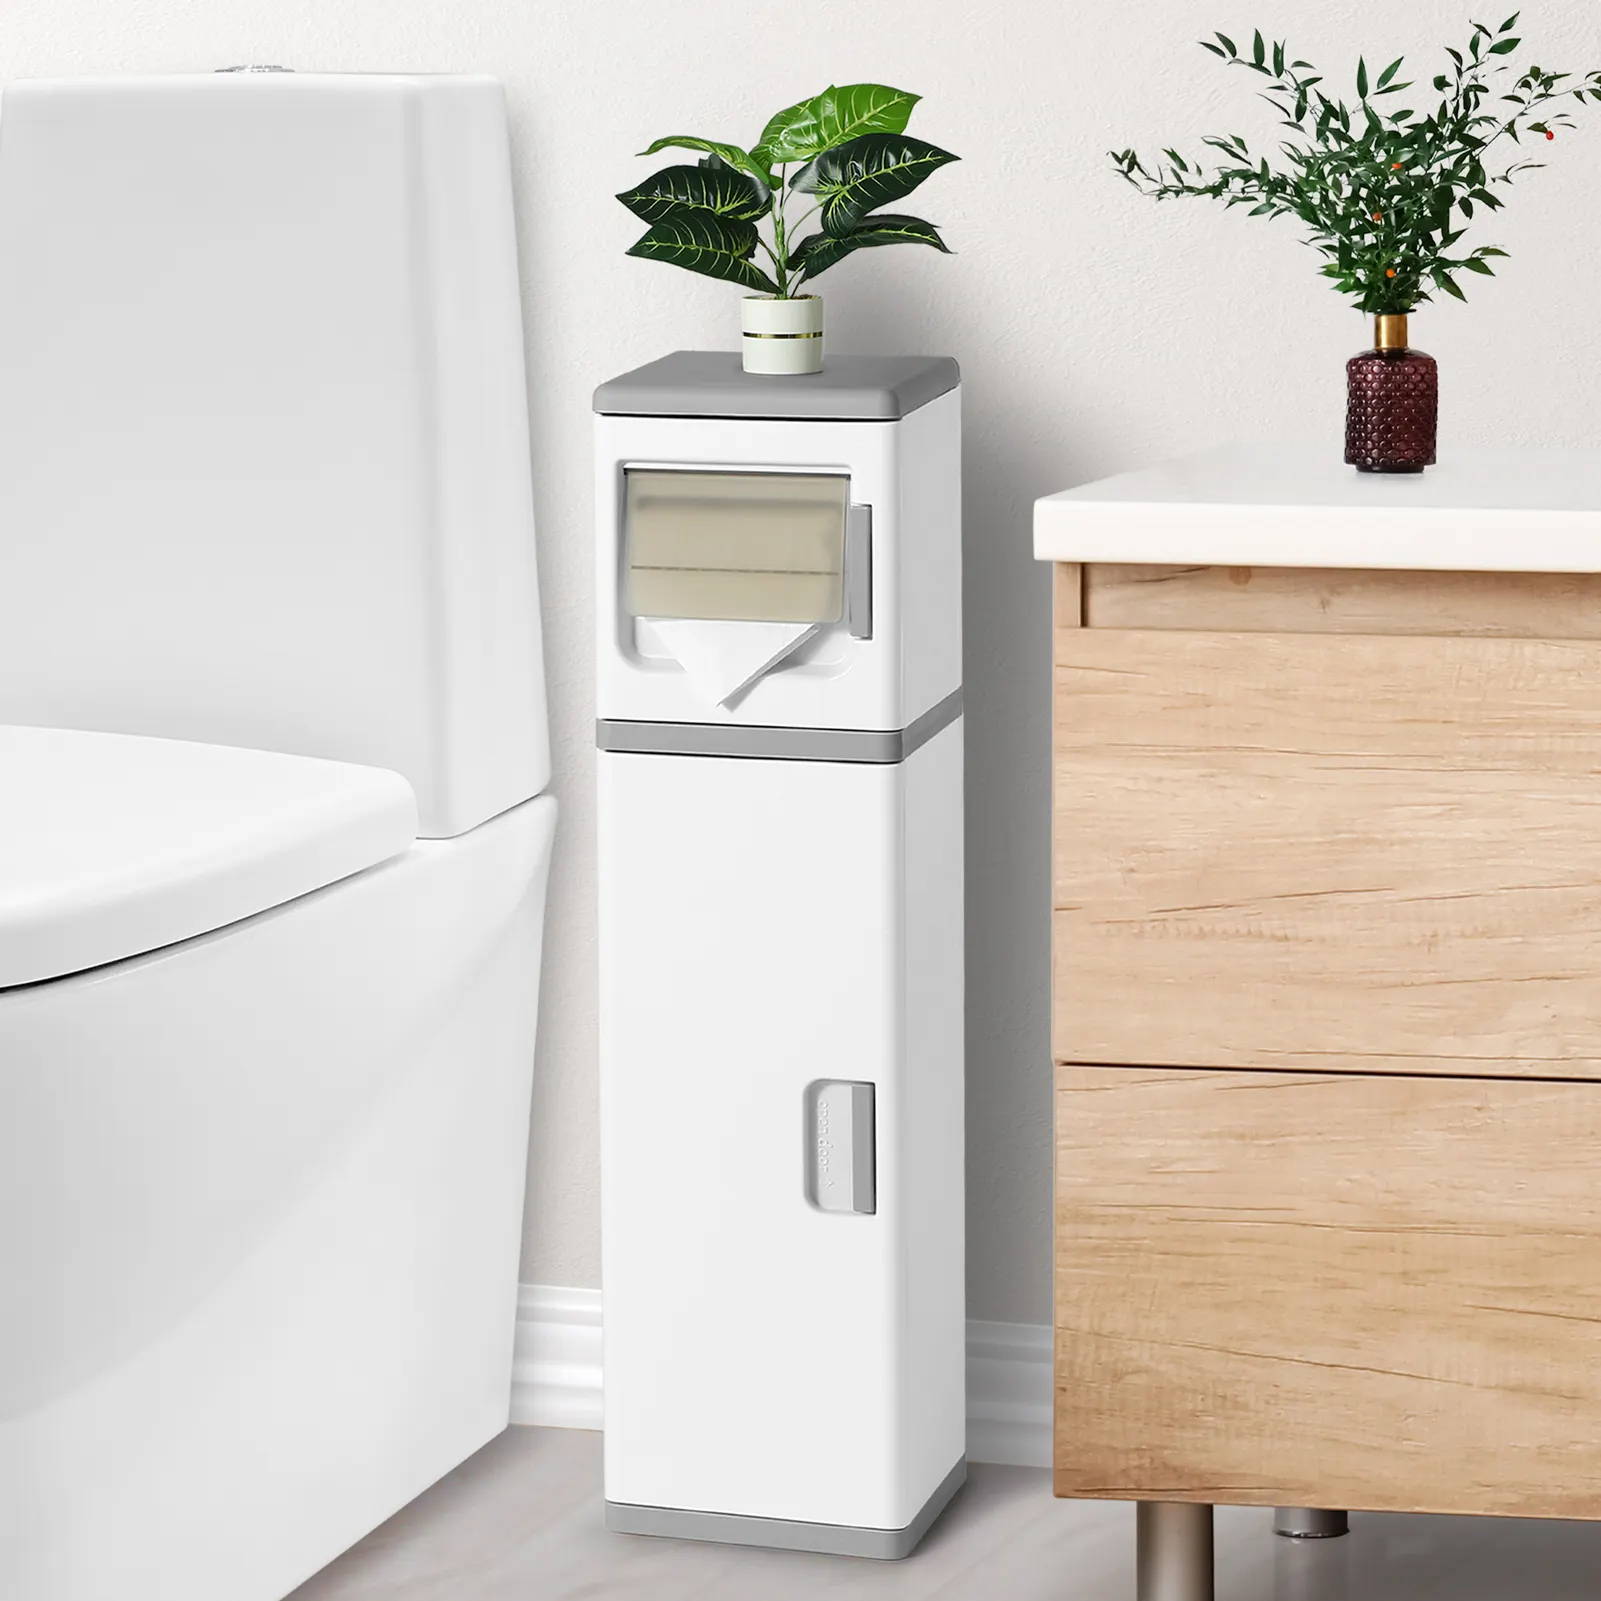 ตู้เก็บของในห้องน้ำ,ที่วางกระดาษชำระขนาดเล็กพร้อมประตูและชั้นวางอุปกรณ์จัดระเบียบในตู้โต๊ะเครื่องแป้งห้องน้ำแบบแคบ2ชั้น